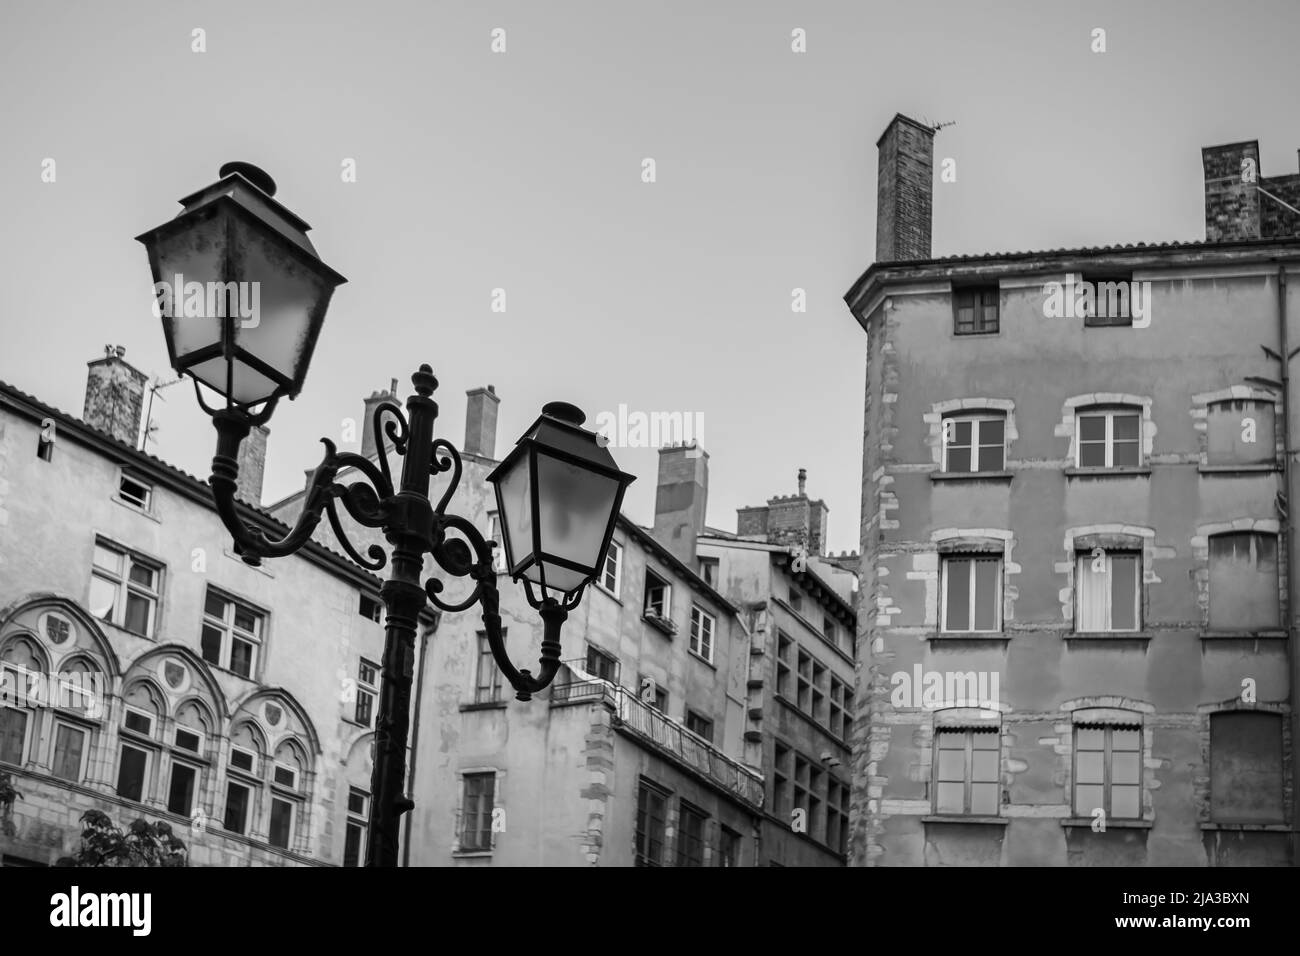 La pittoresca città vecchia di Lione con i suoi colorati edifici residenziali e lampione d'epoca in bianco e nero Foto Stock